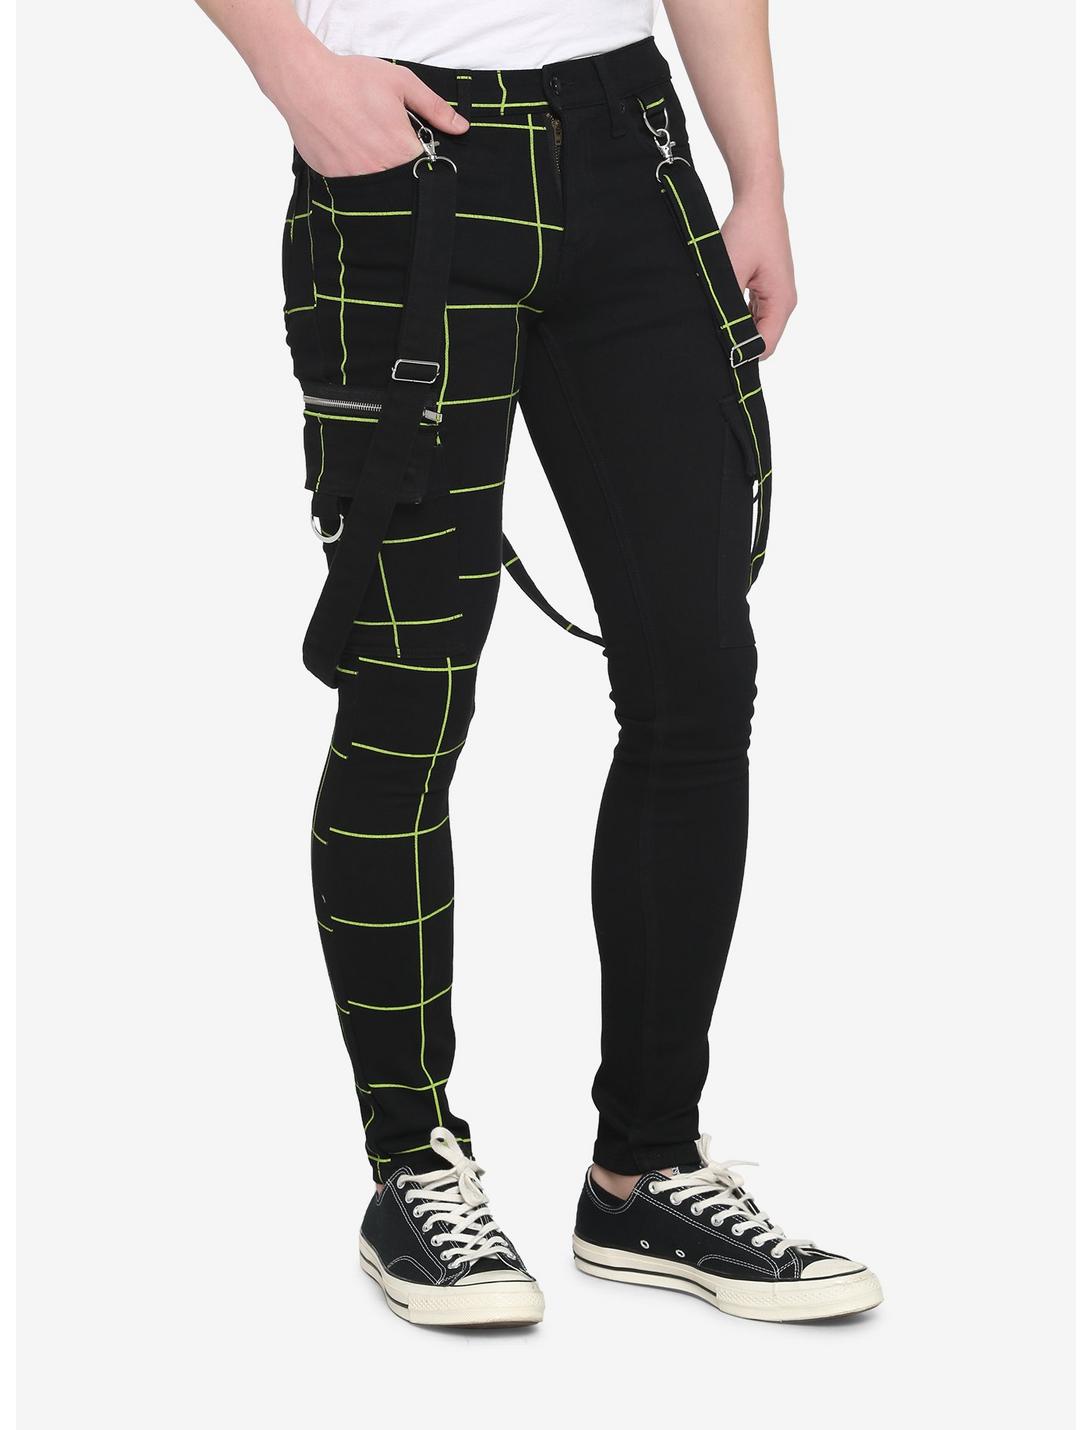 HT Denim Black & Green Split Grid Stinger Jeans, BLACK  GREEN, hi-res